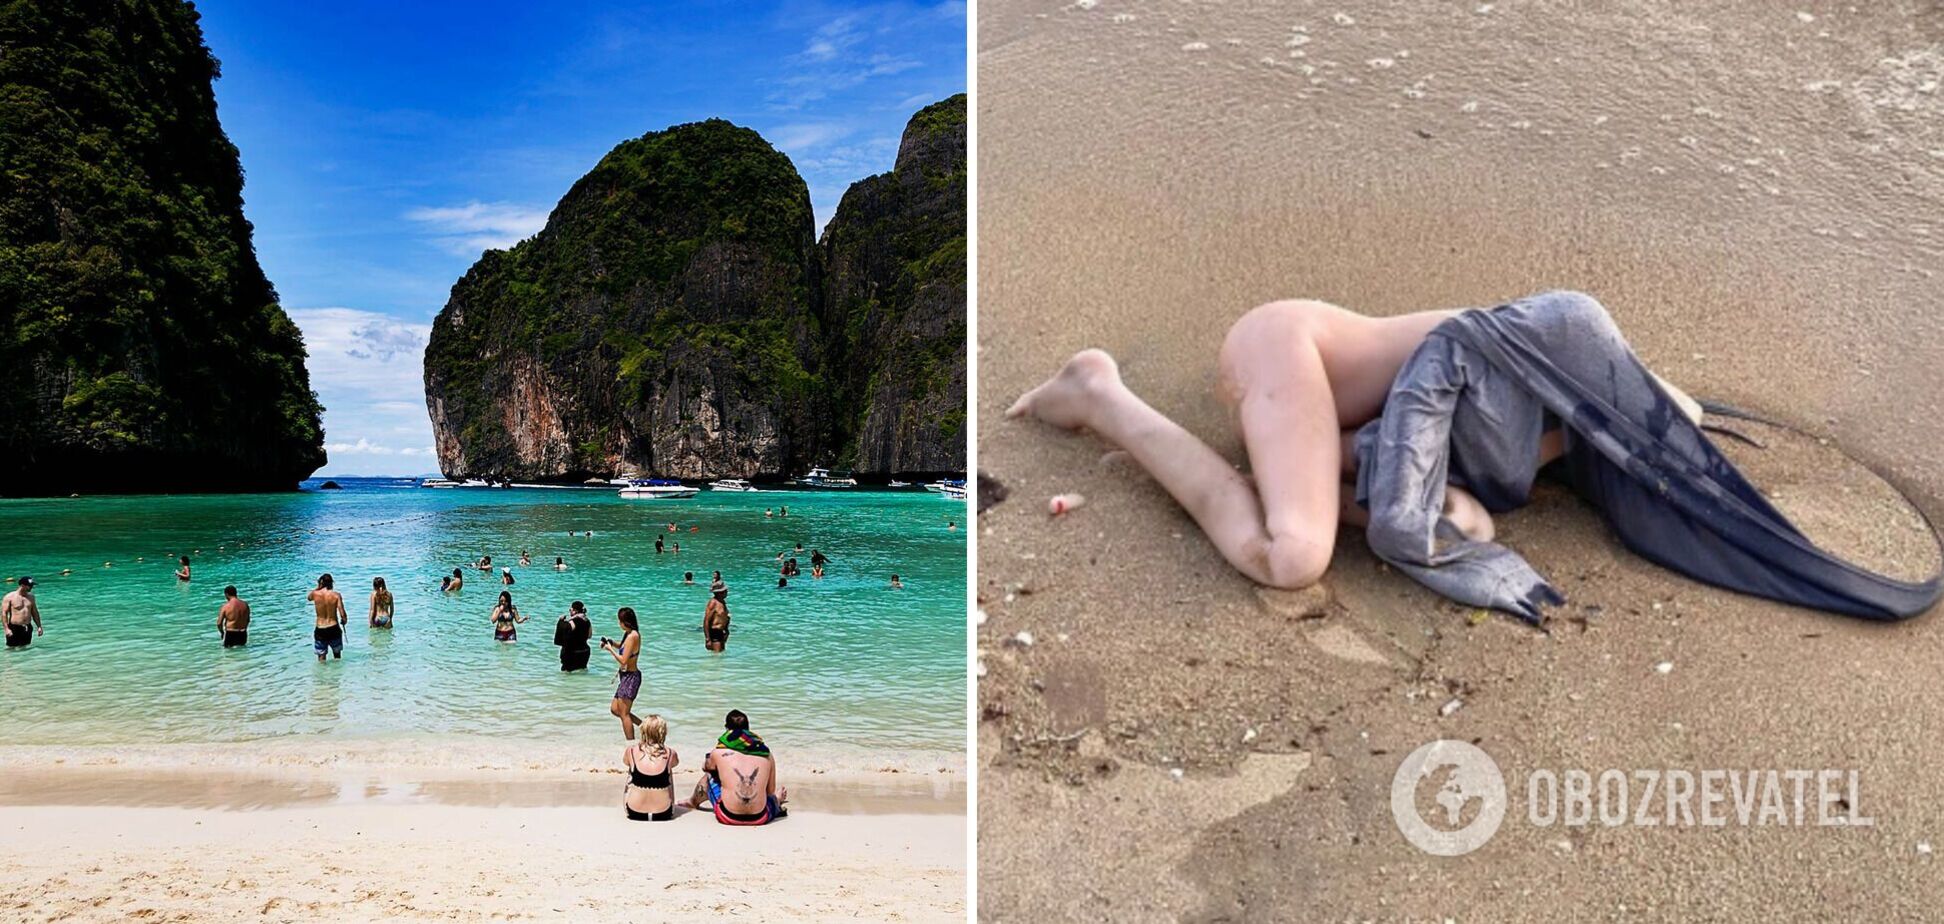 Секс-кукла наделала шума на пляже в Таиланде: отдыхающие восприняли ее за труп женщины. Фото